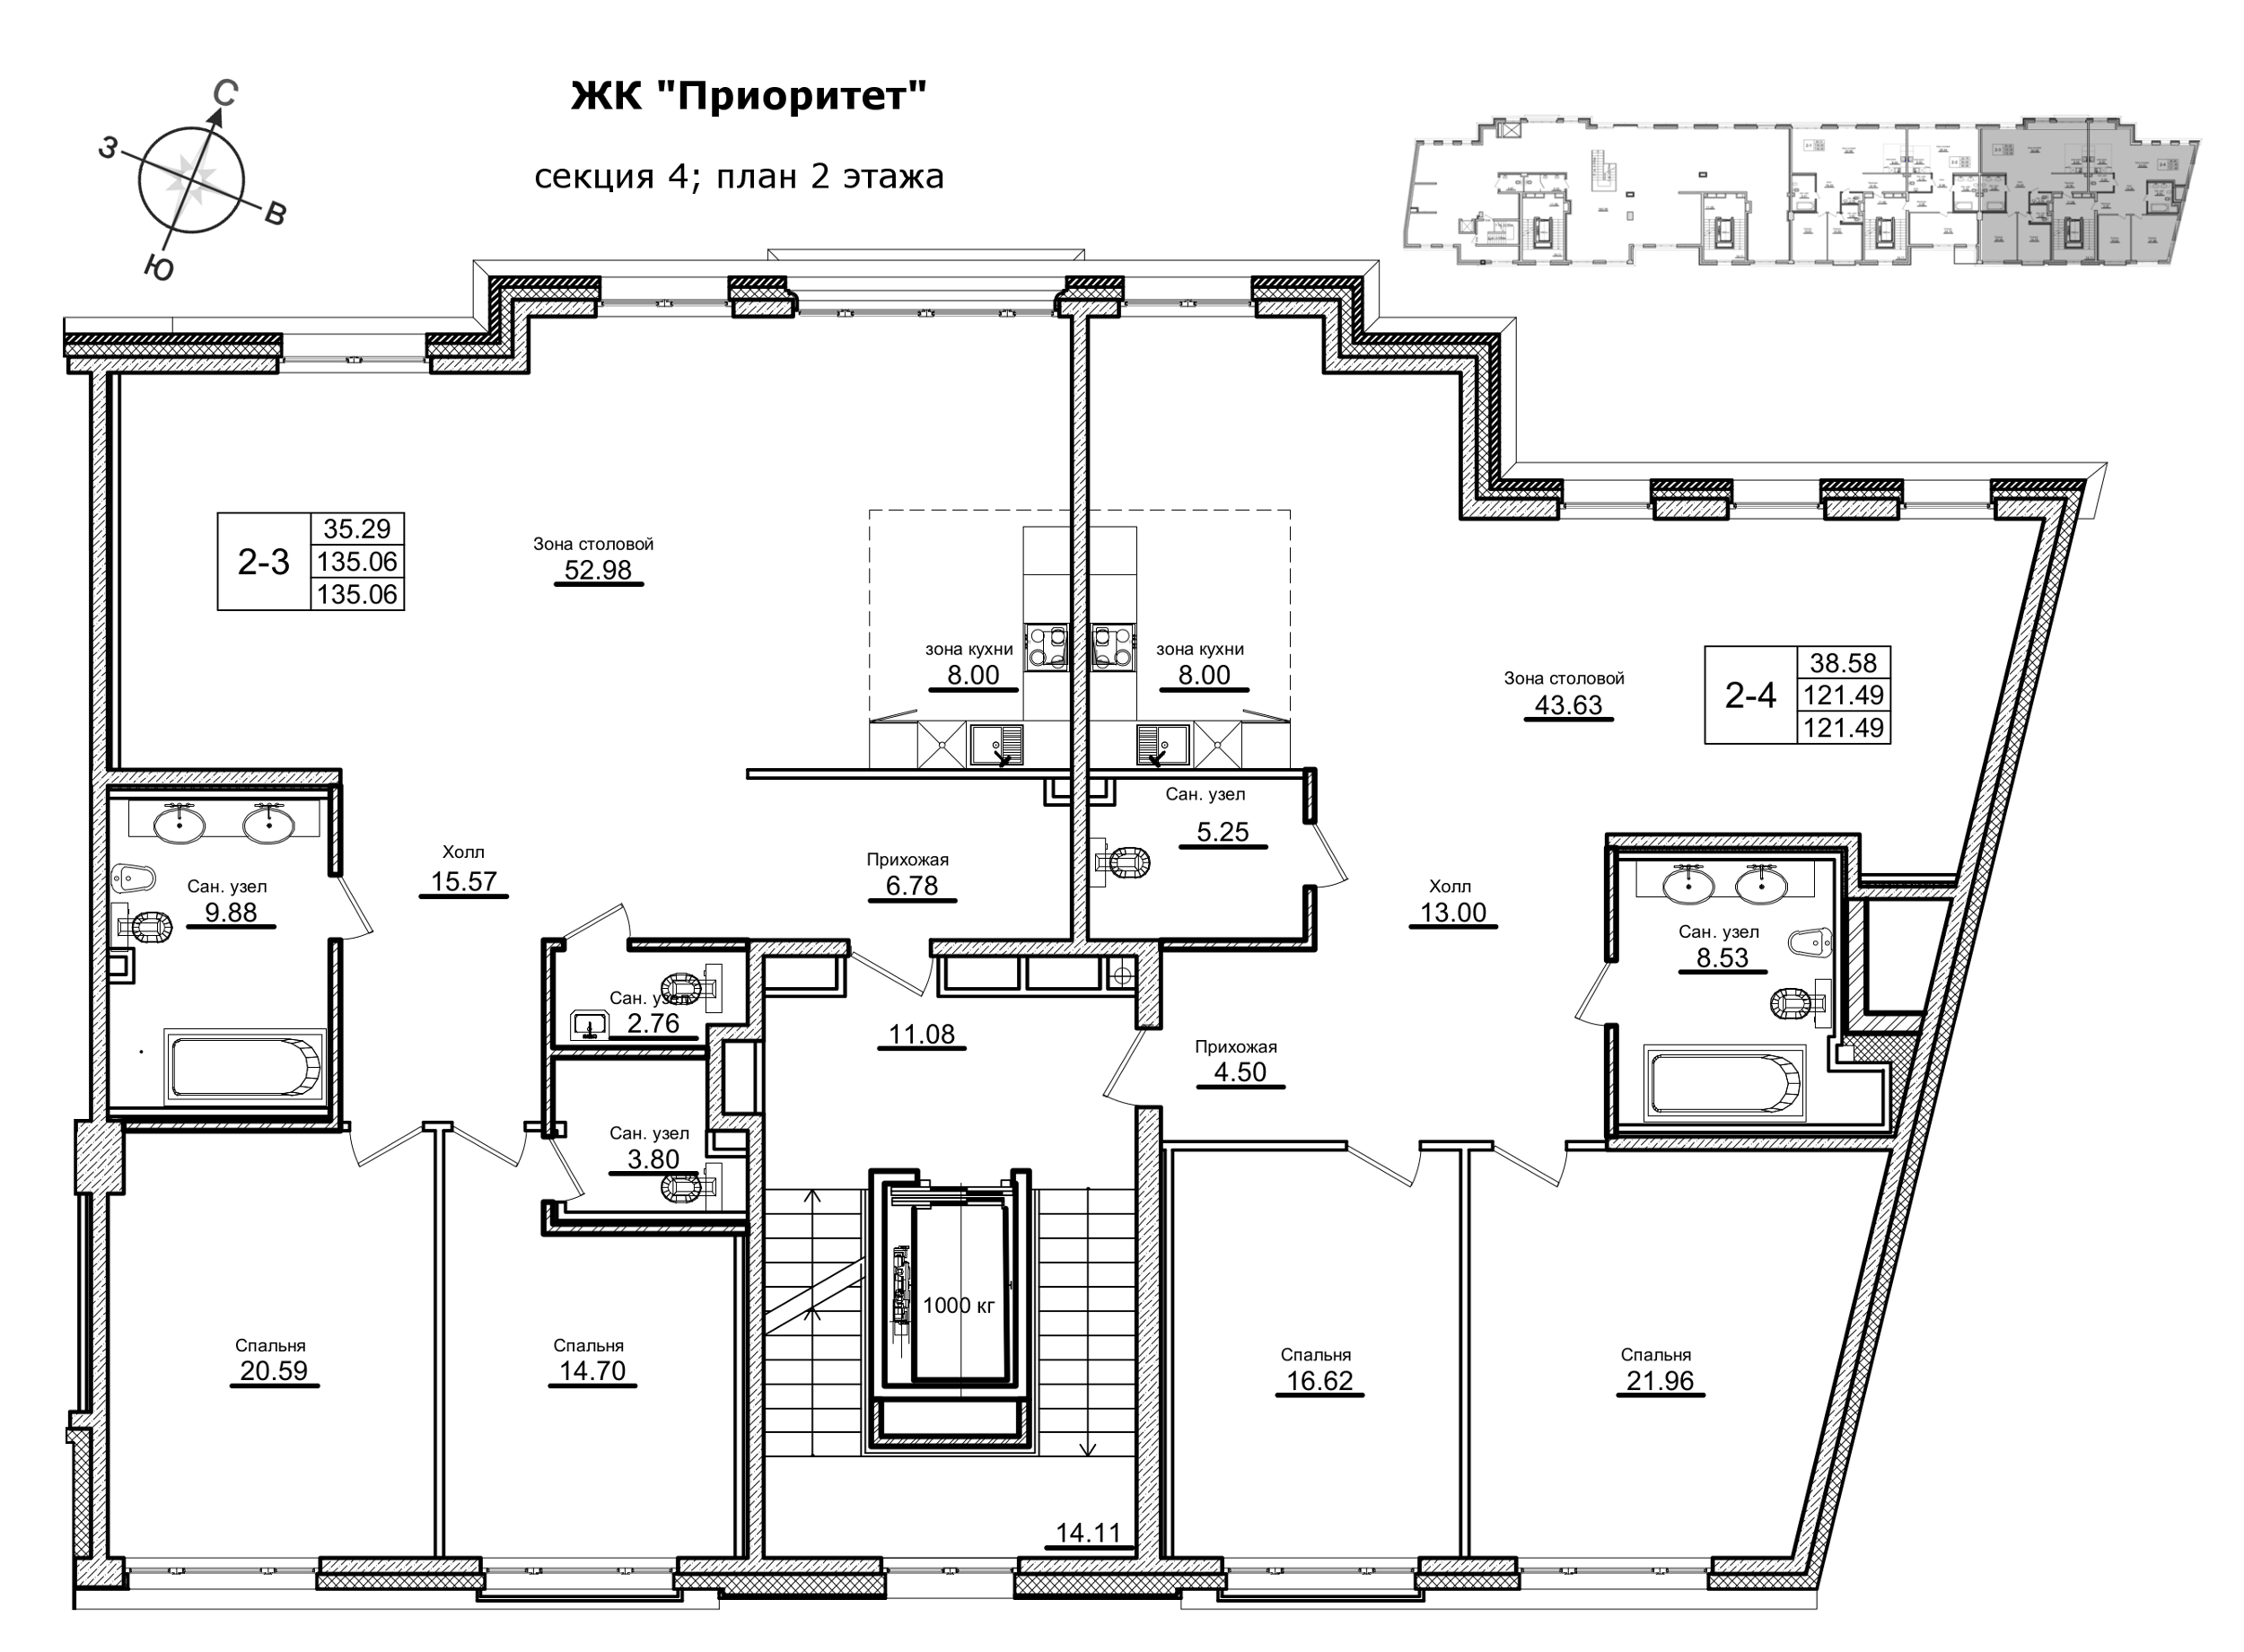 3-комнатная (Евро) квартира, 122.8 м² в ЖК "Приоритет" - планировка этажа